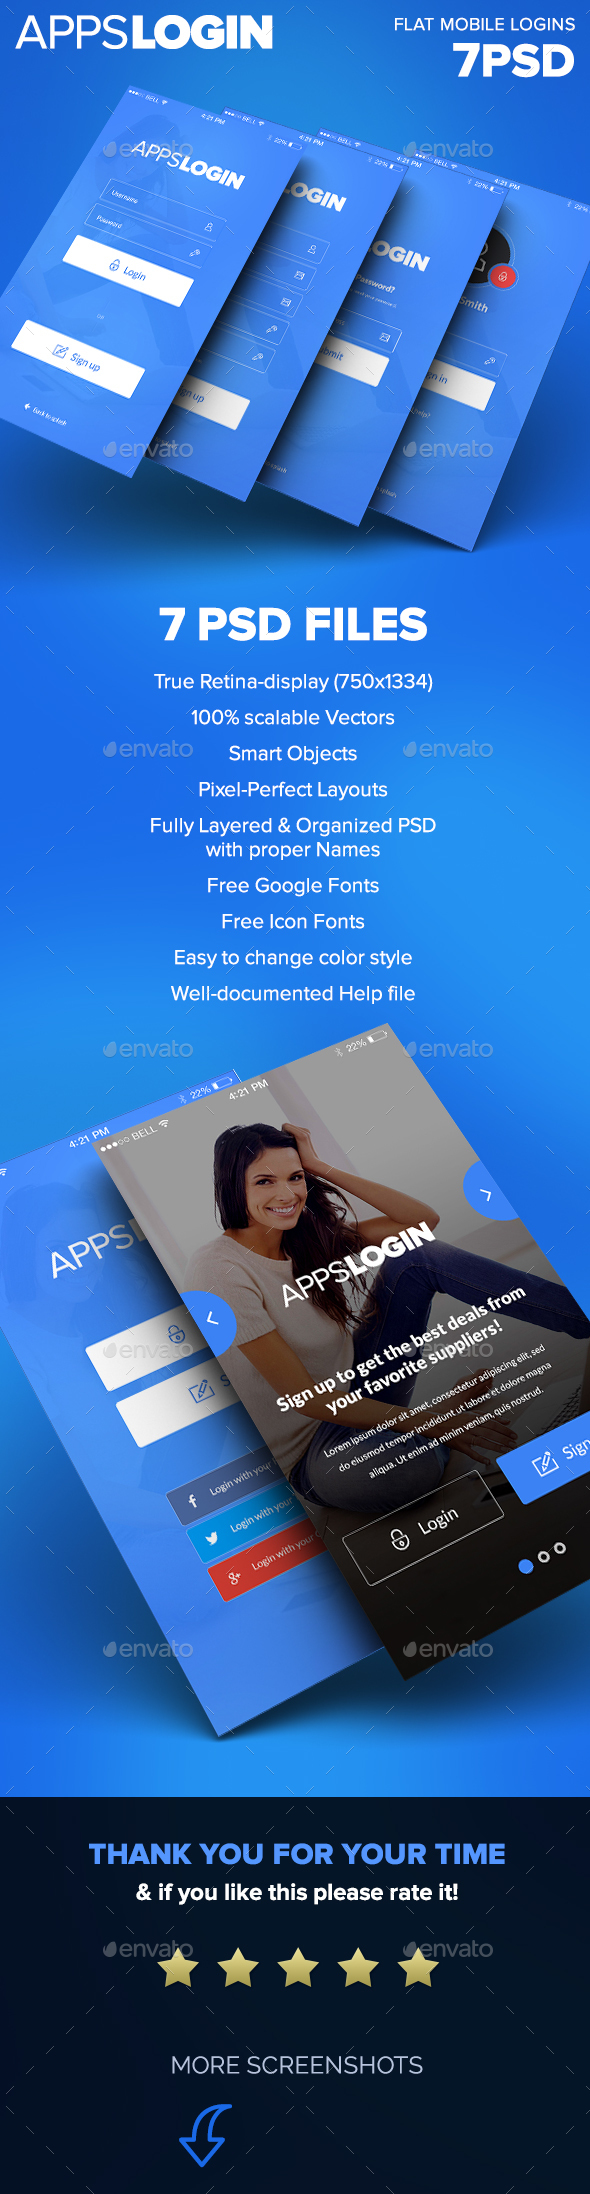 Apps Login - Mobile Login Forms